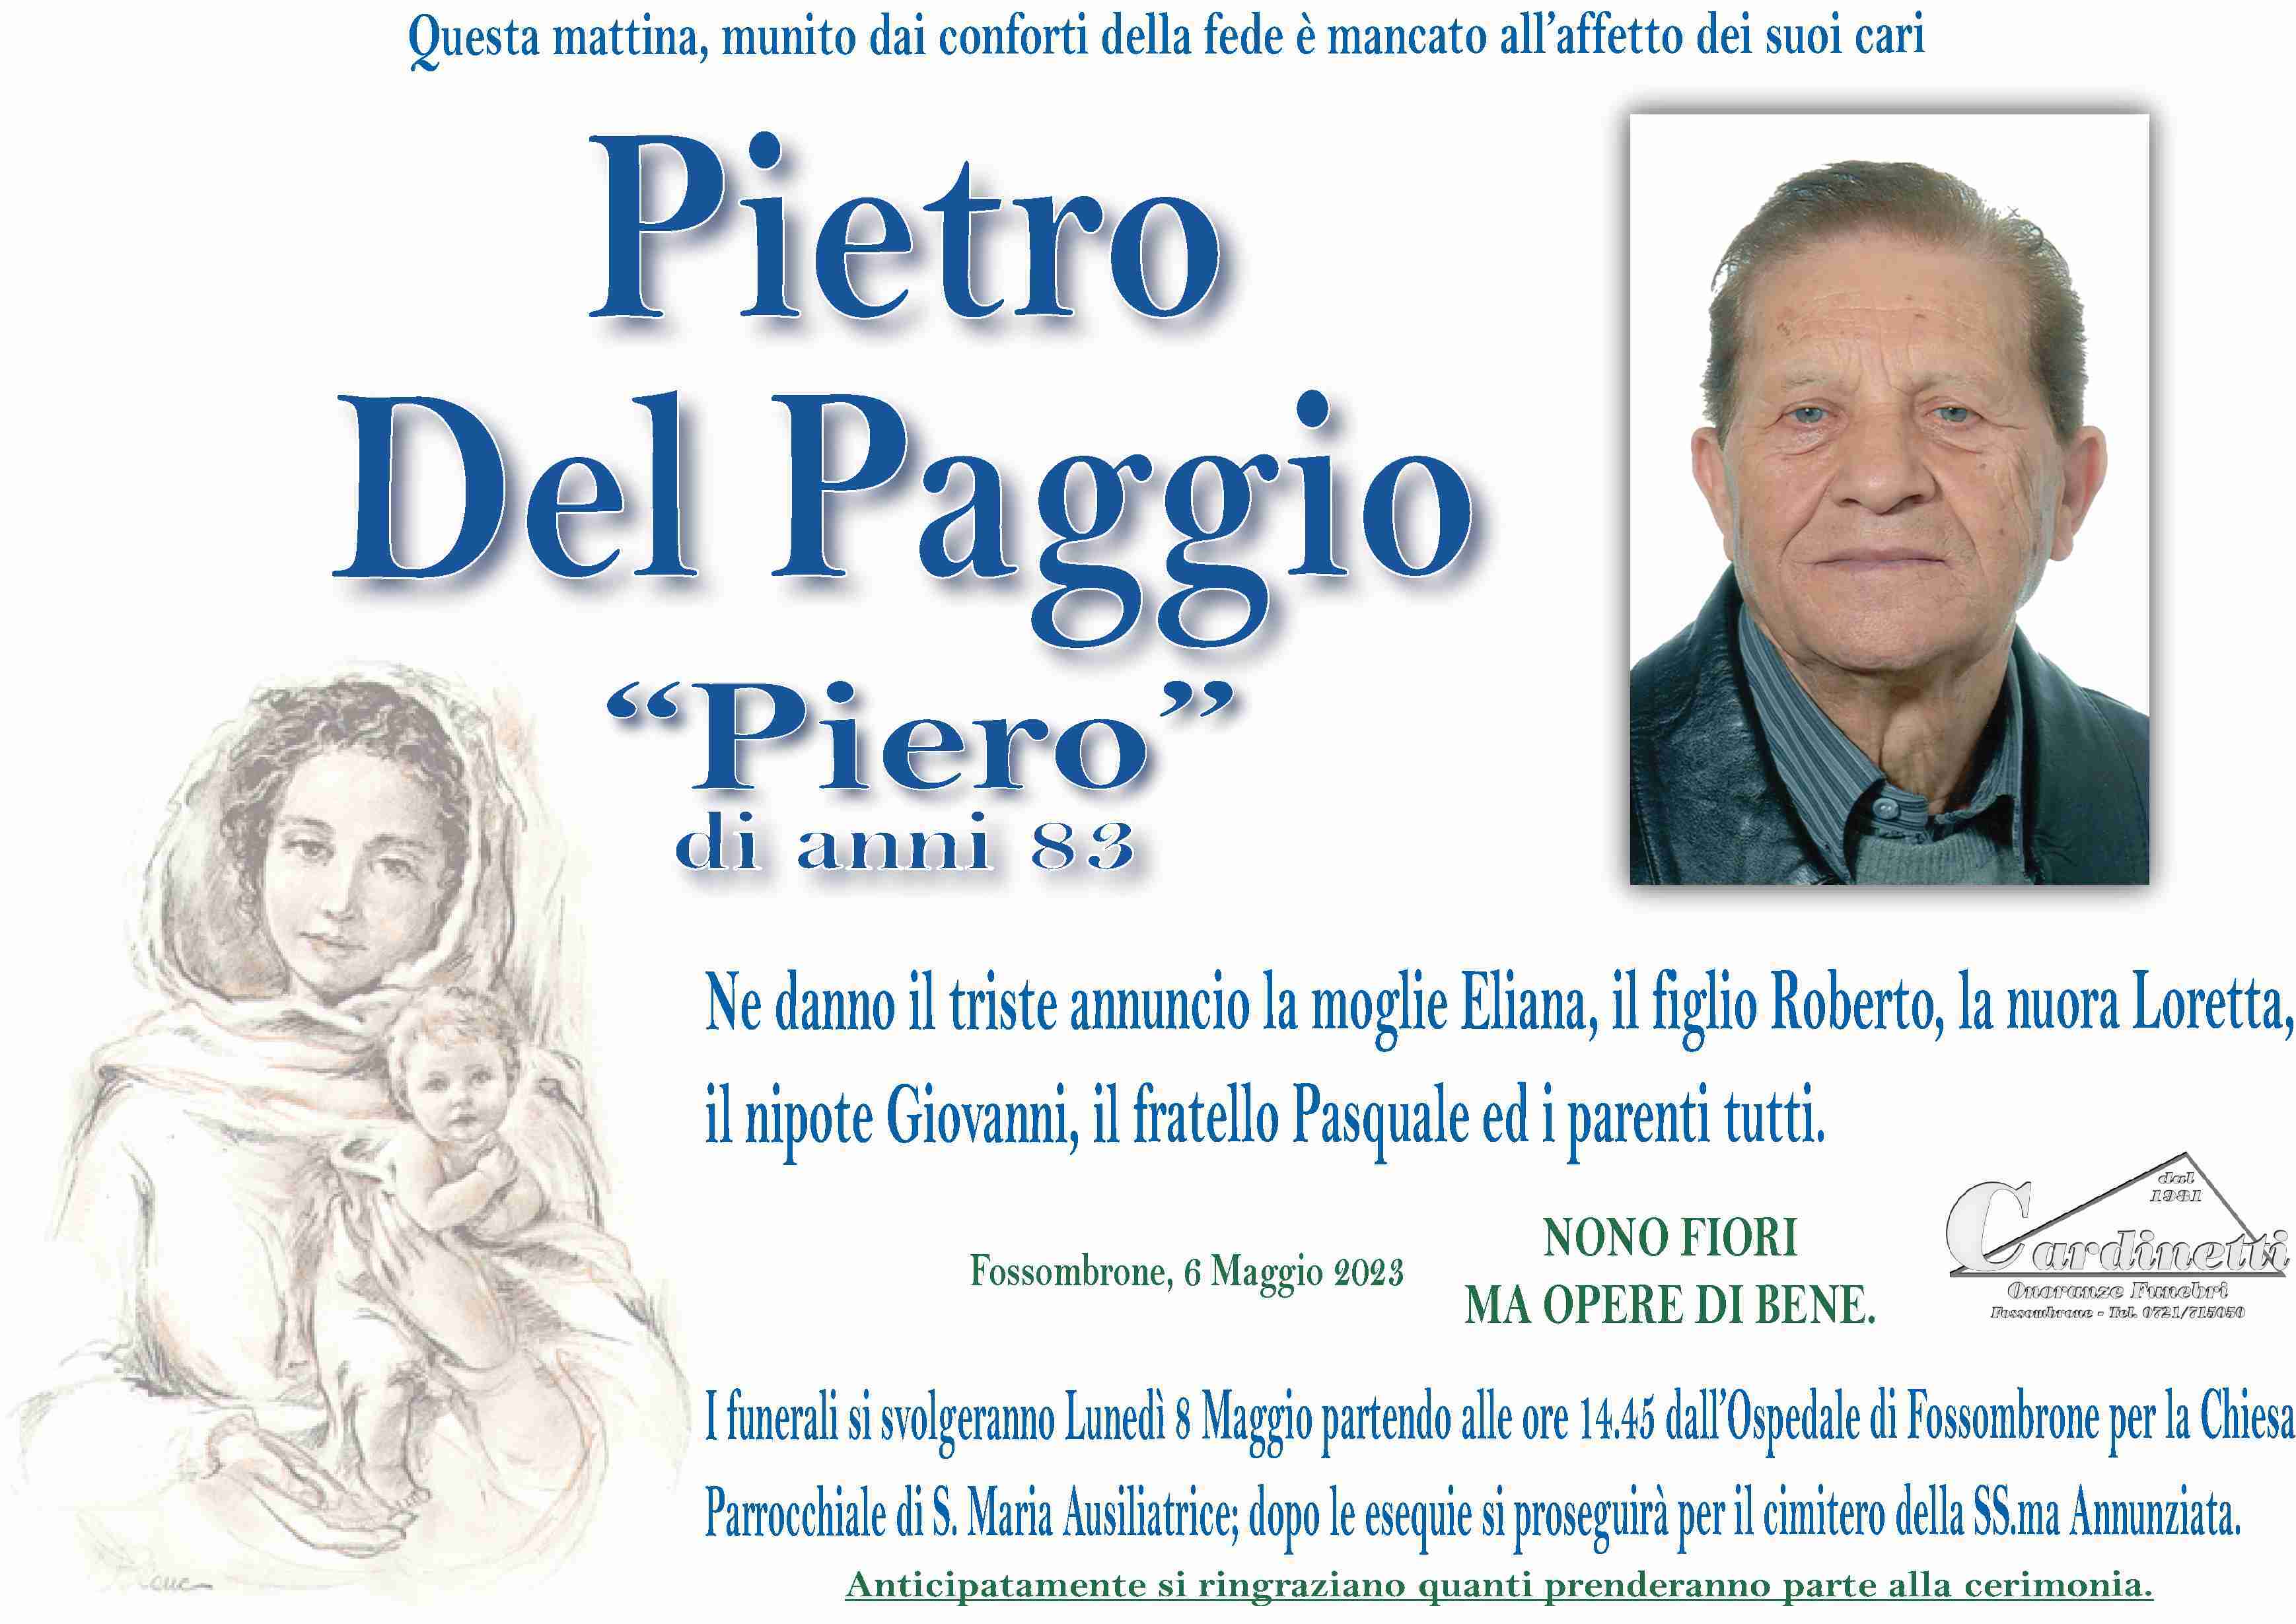 Pietro Del Paggio